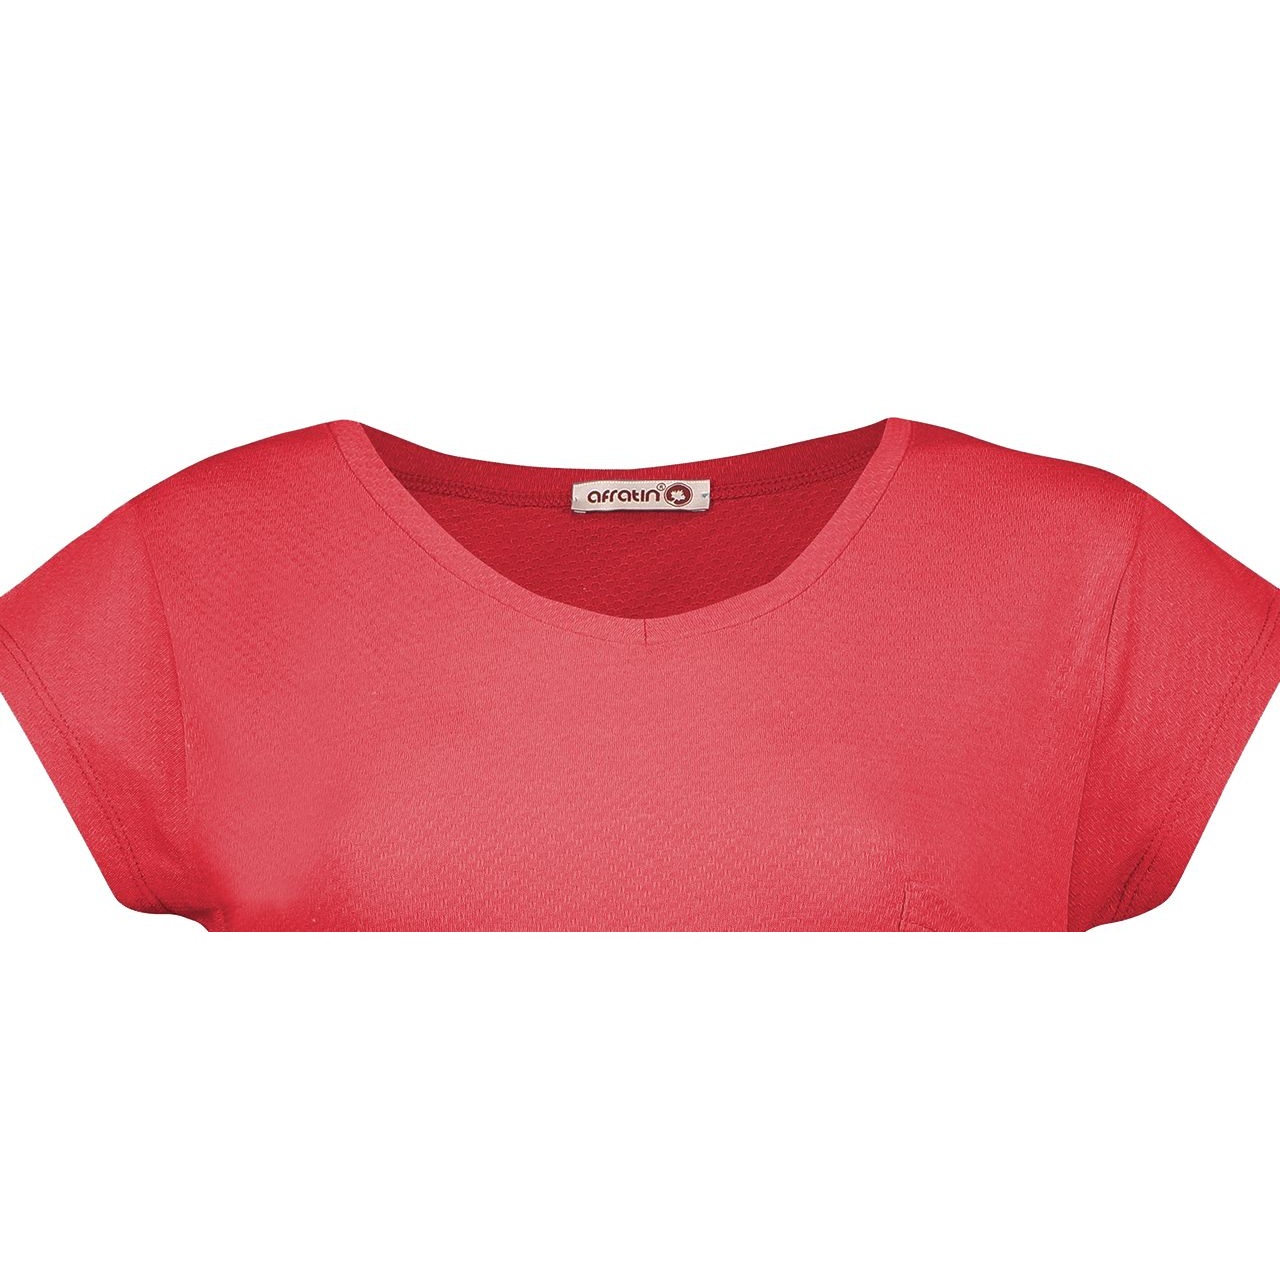 تی شرت زنانه افراتین کد 3-2515 رنگ قرمز